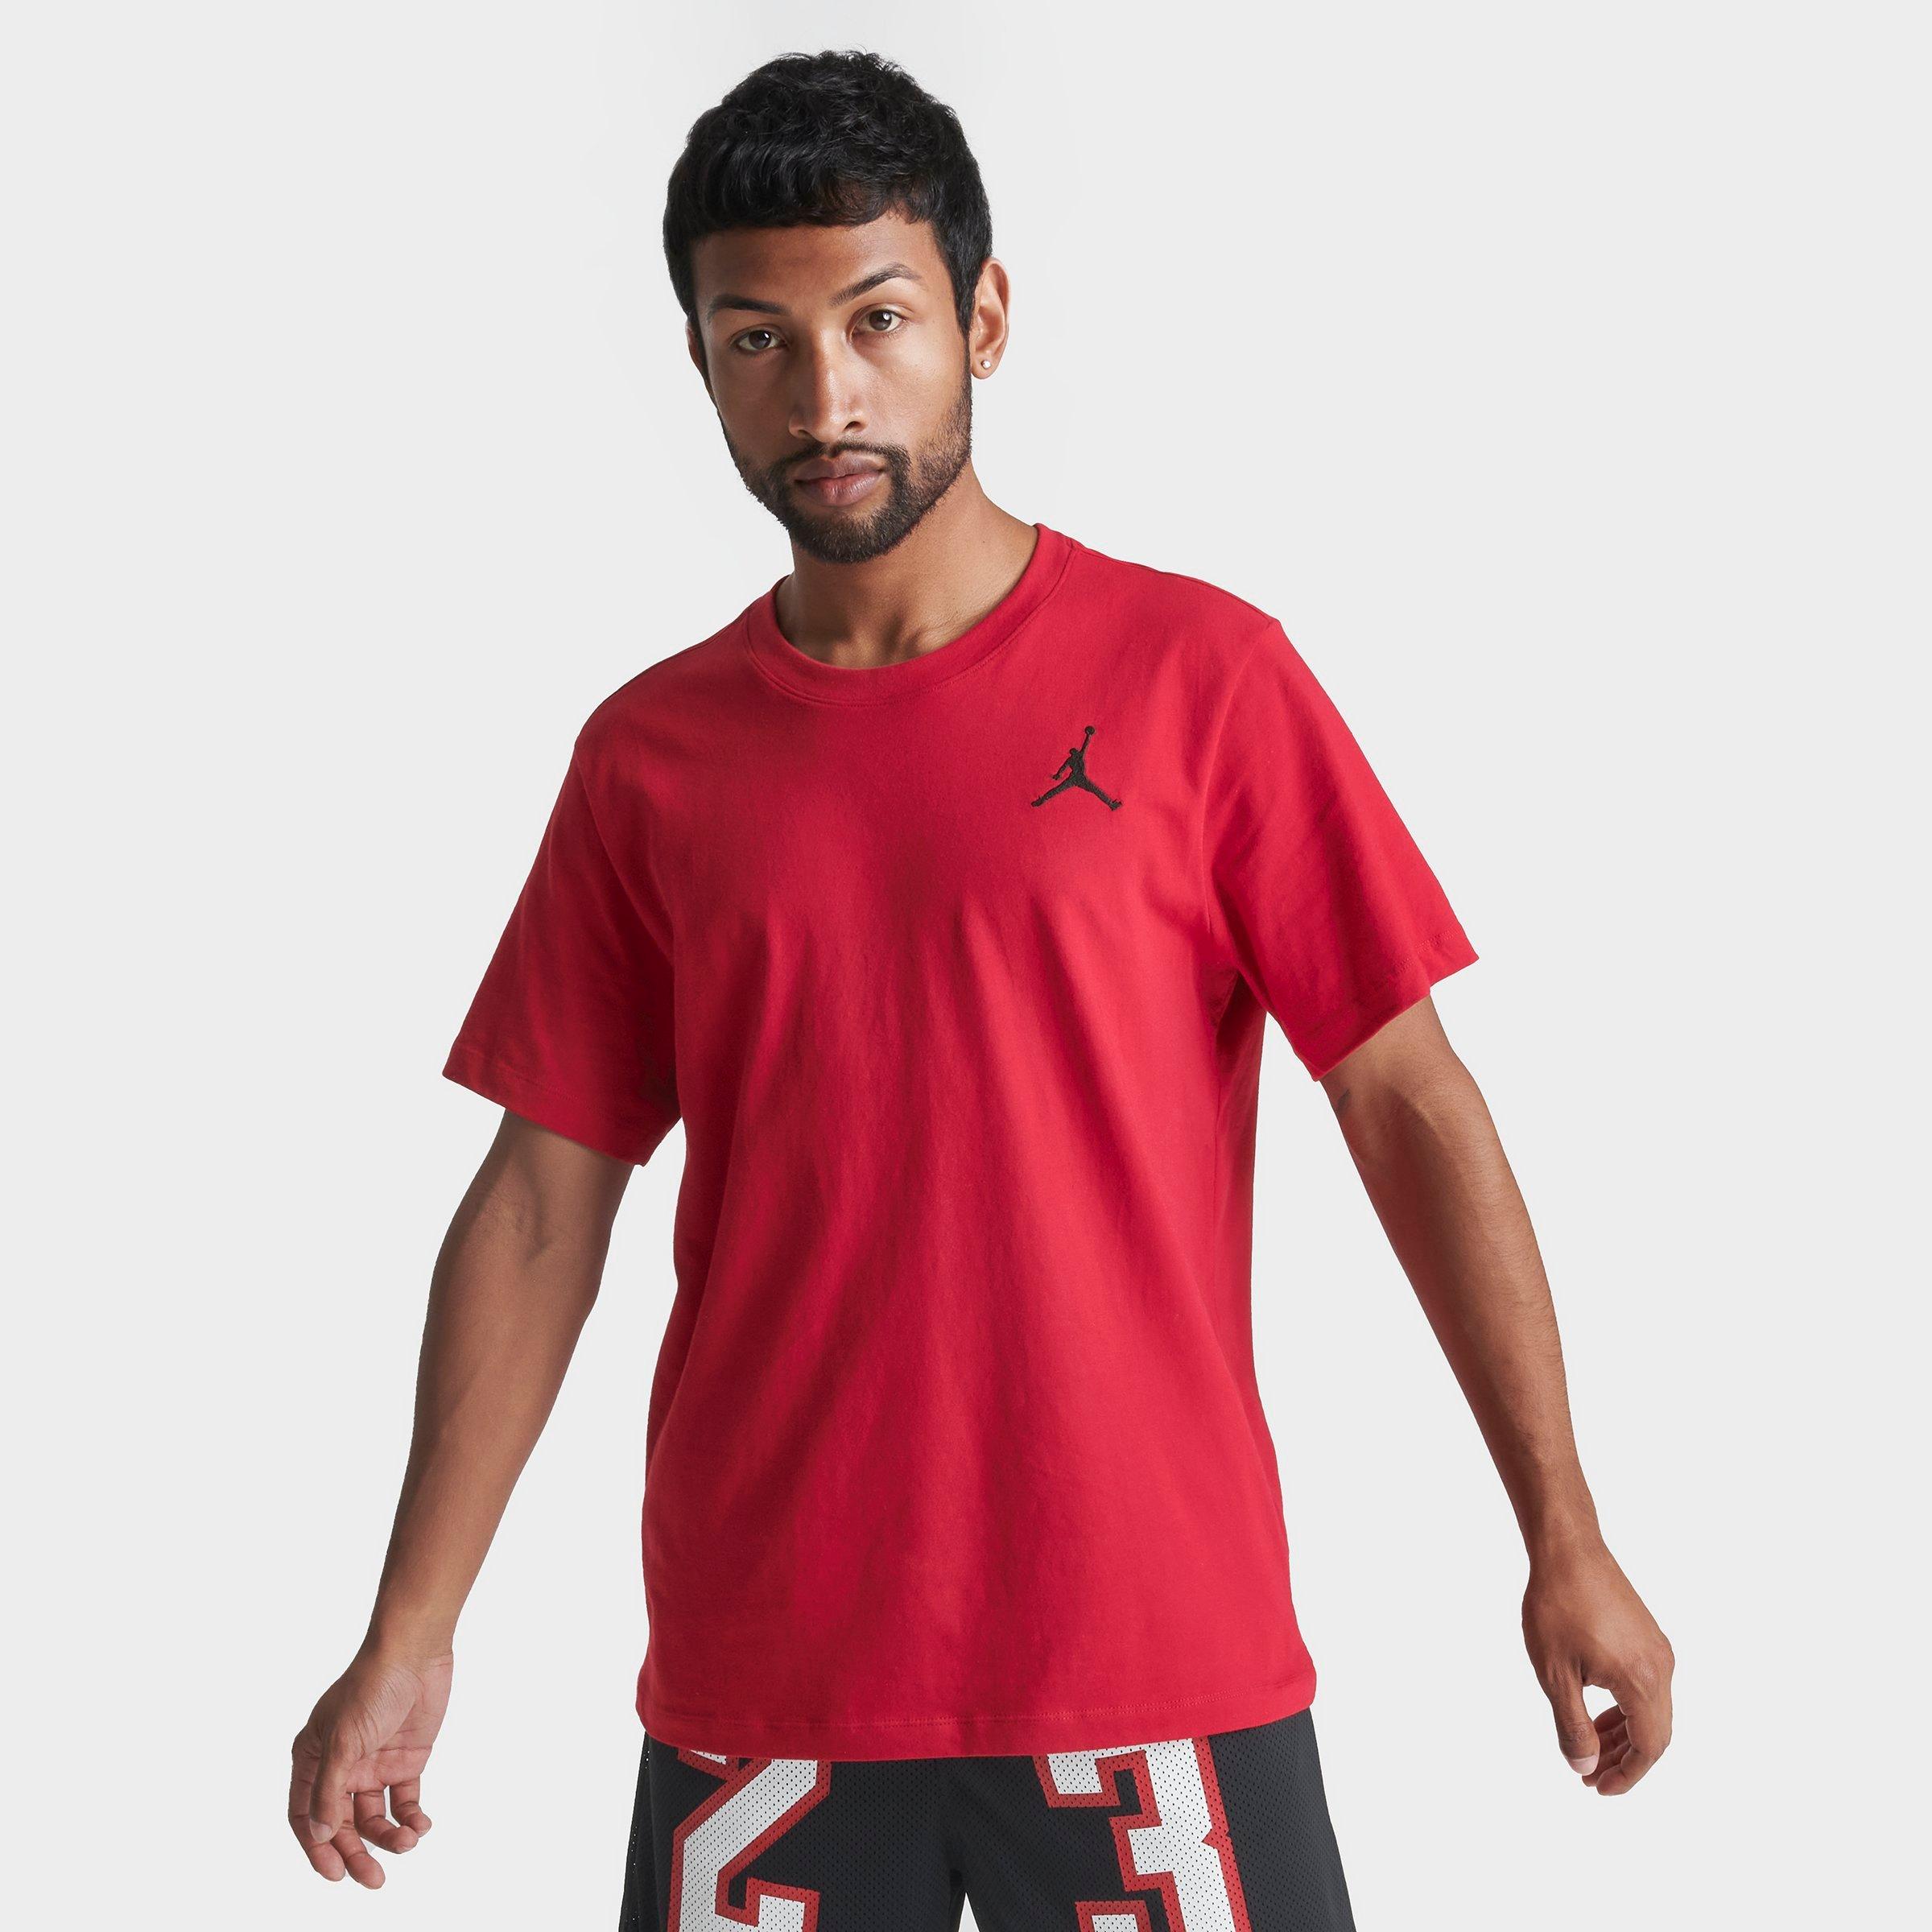 Nike Jordan Men's Jumpman Embroidered Logo T-shirt Size Medium 100% Cotton In Gym Red/black